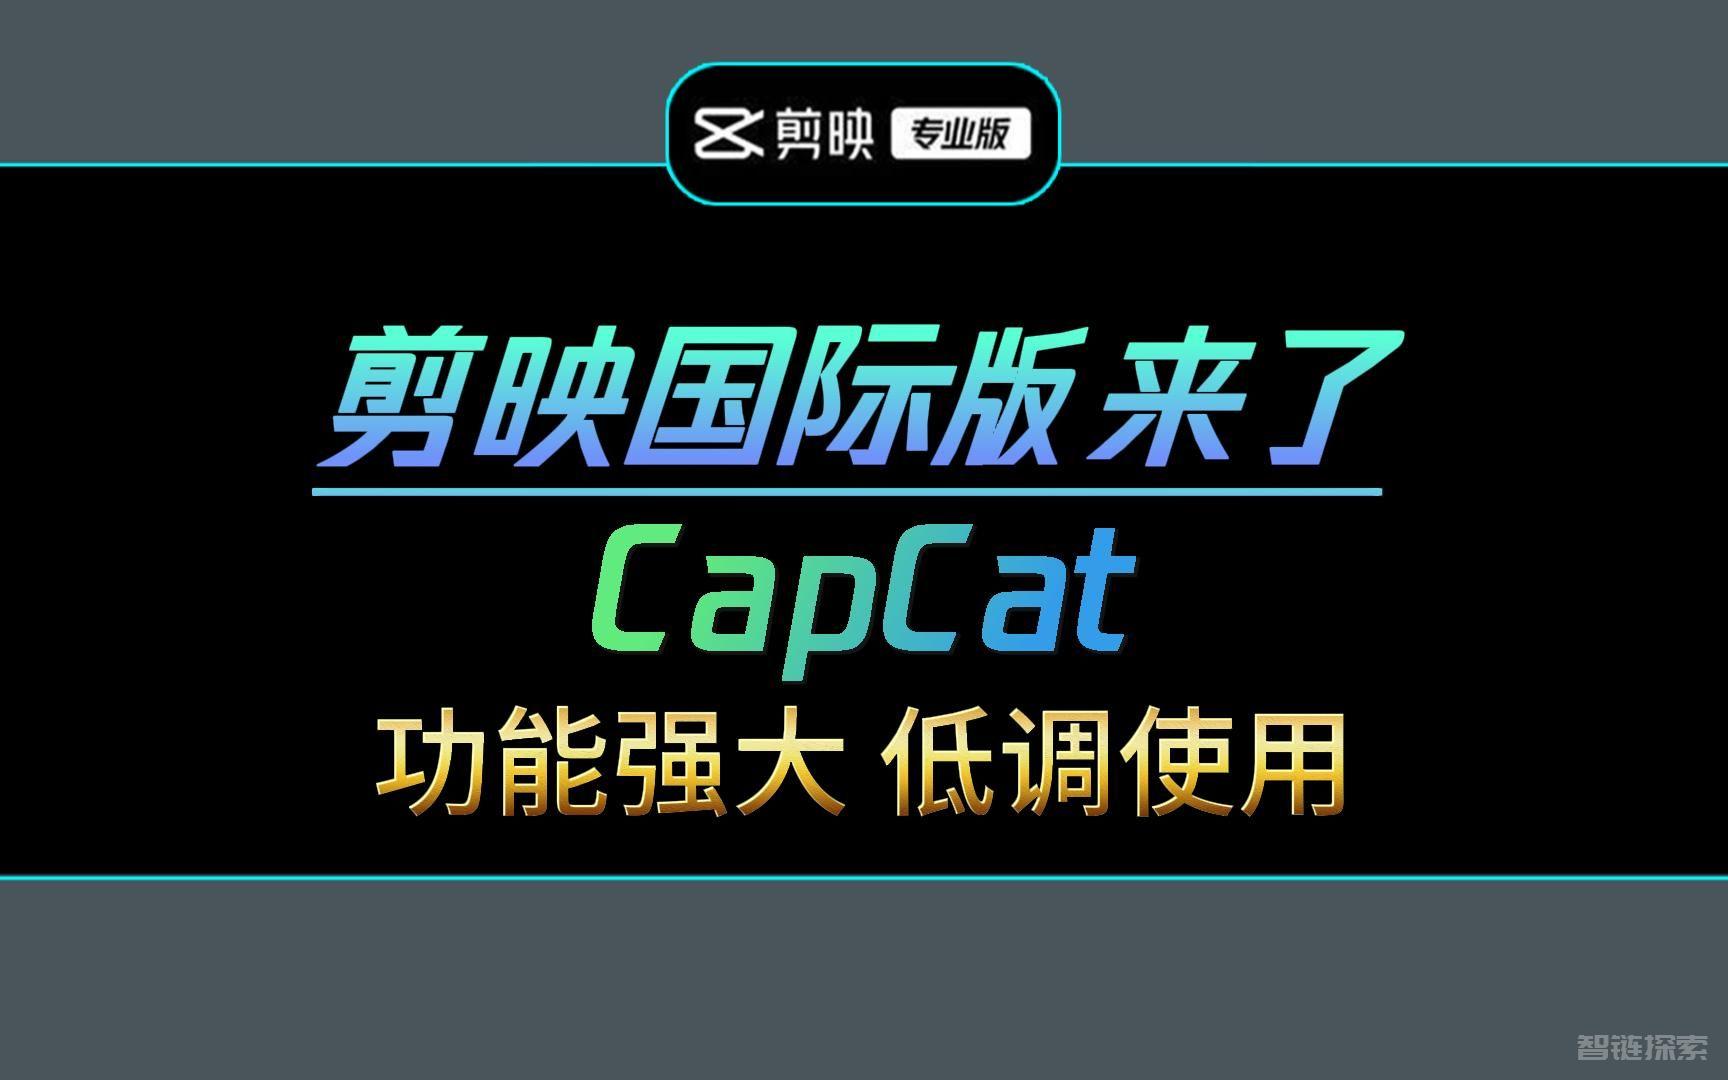 终极视频剪辑组合ChatGPT + Capcut插件: AI一键生成视频, 自动操作